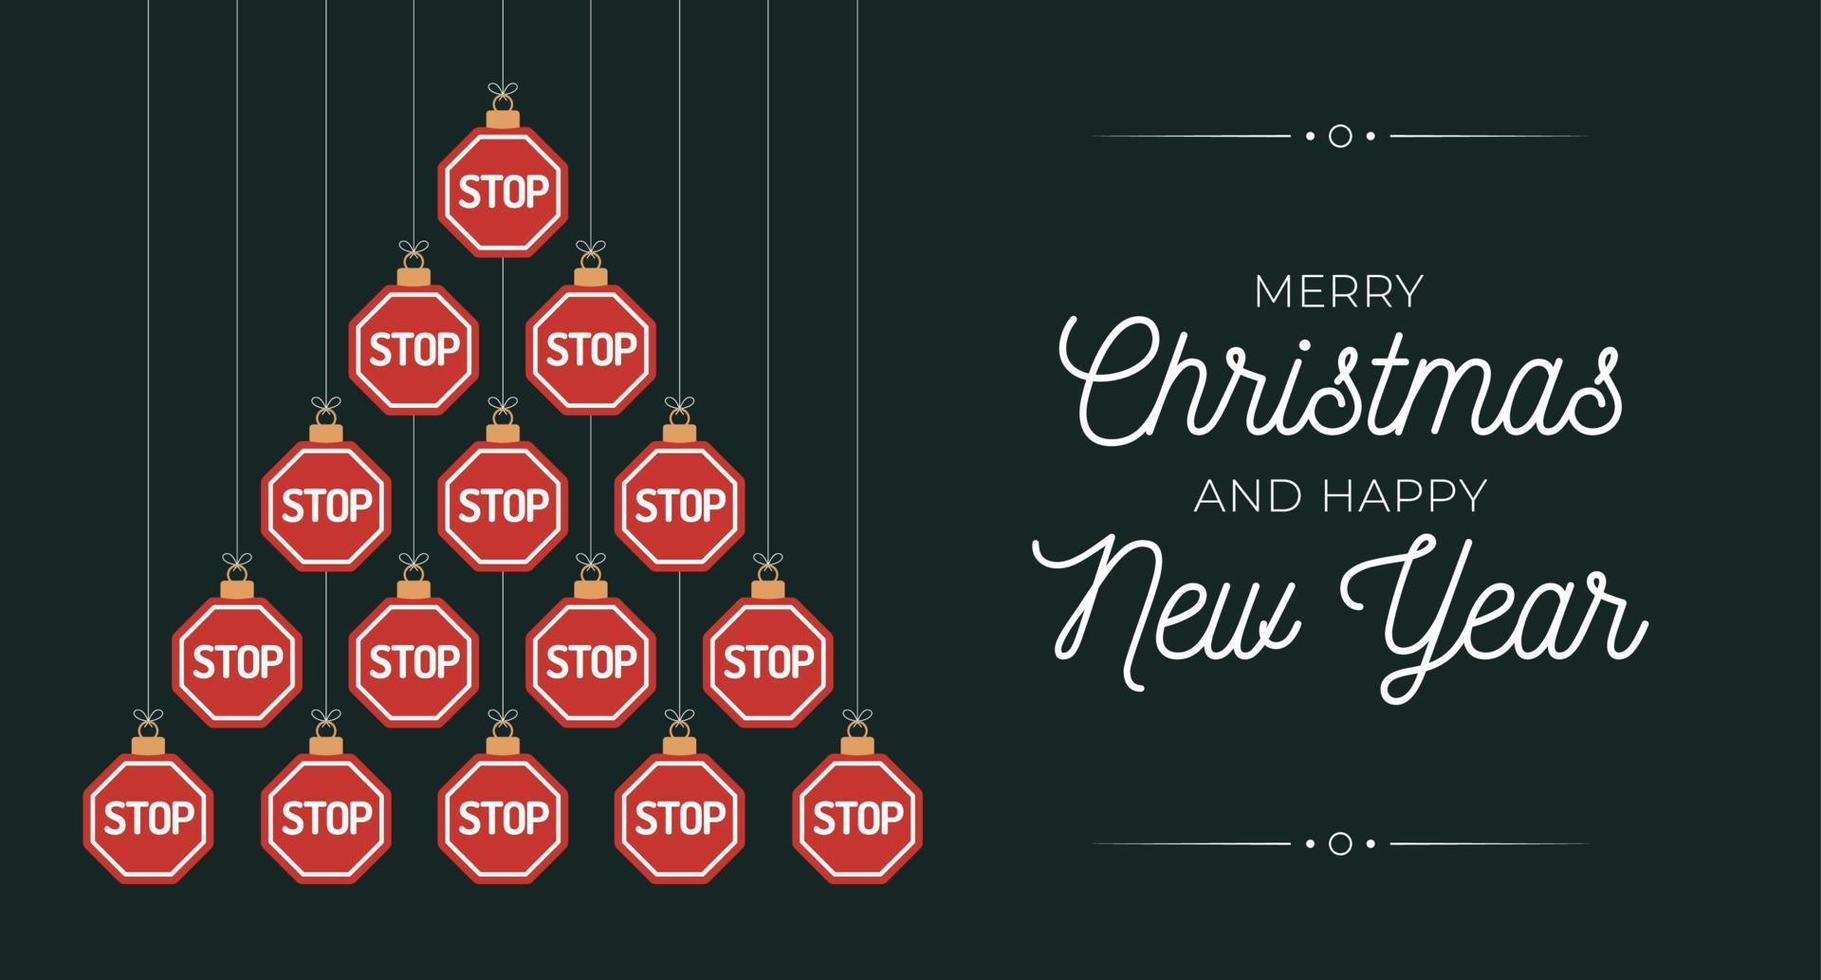 stoppskylt jul och nyår gratulationskort grannlåt träd. kreativt julgran gjord av vägstoppskylt på platt grön bakgrund för jul- och nyårsfirande. trafik gratulationskort vektor